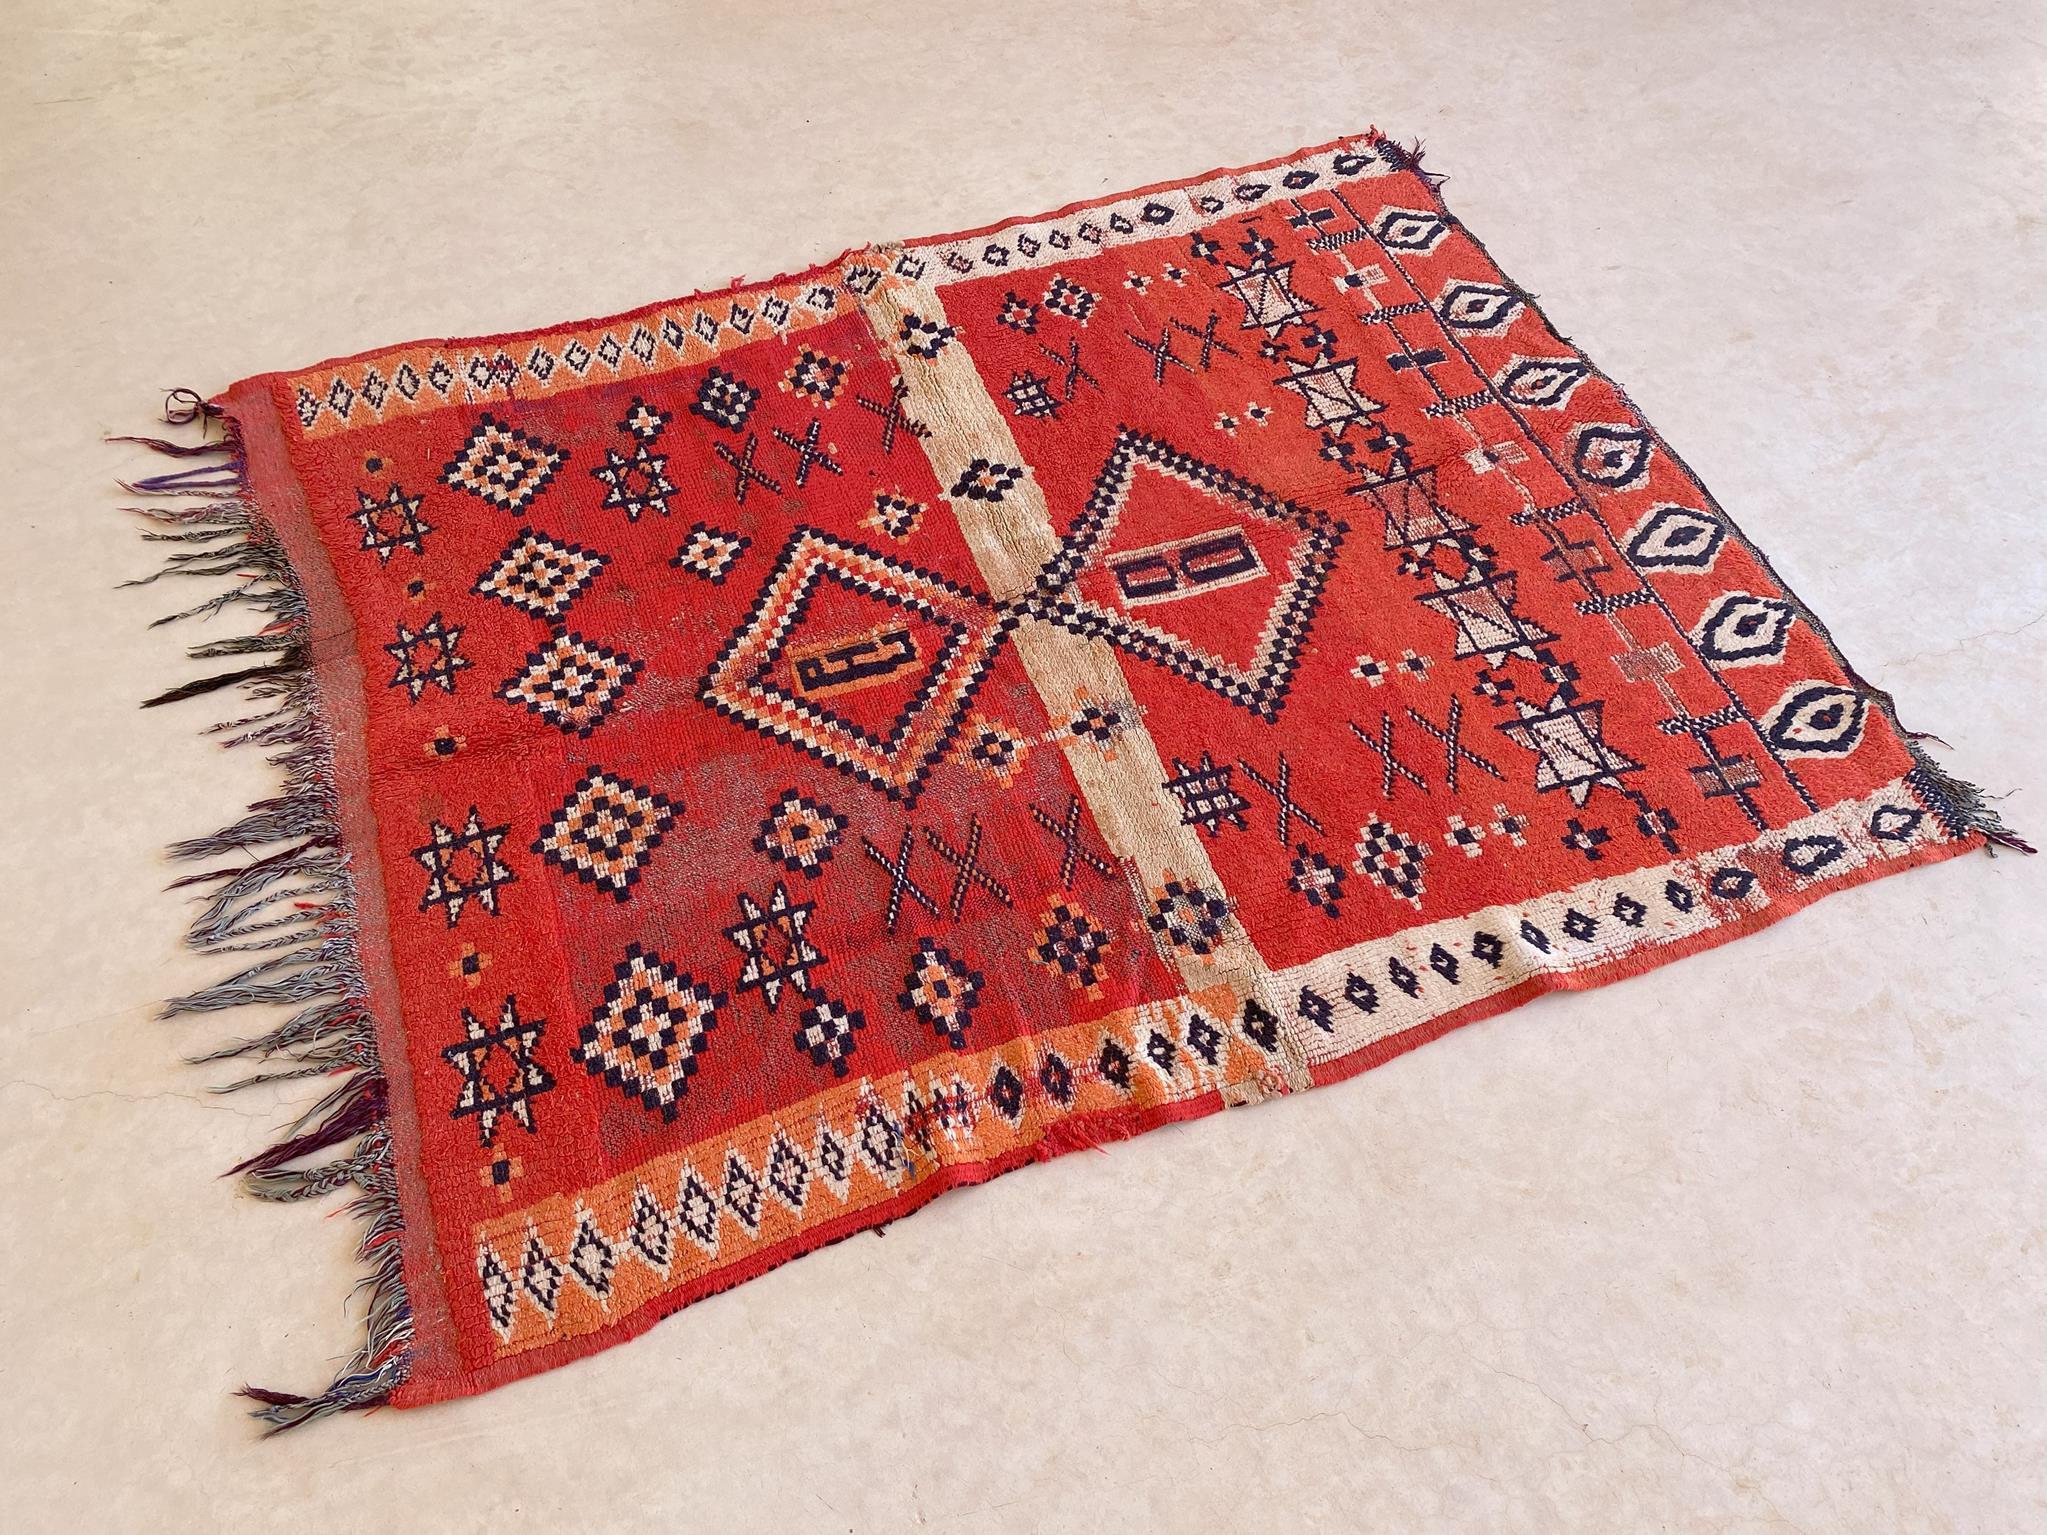 Marokkanischer Boujad-Teppich im Vintage-Stil - Rot - 4x5feet / 124x153cm (Handgewebt)